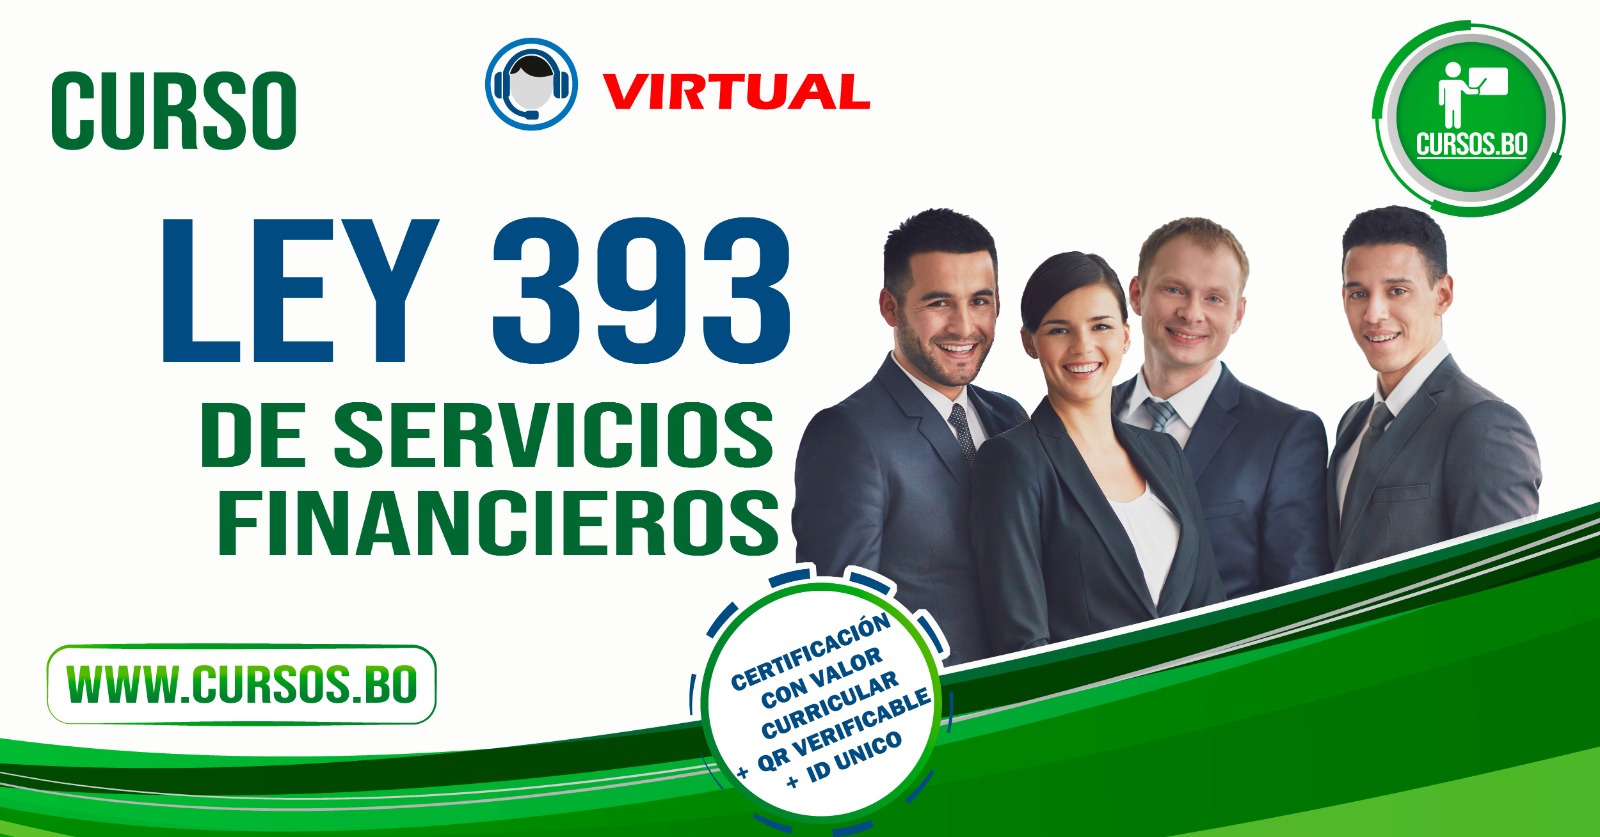 Curso Ley 393 de servicios financieros - ON LINE (Virtual 24/7)